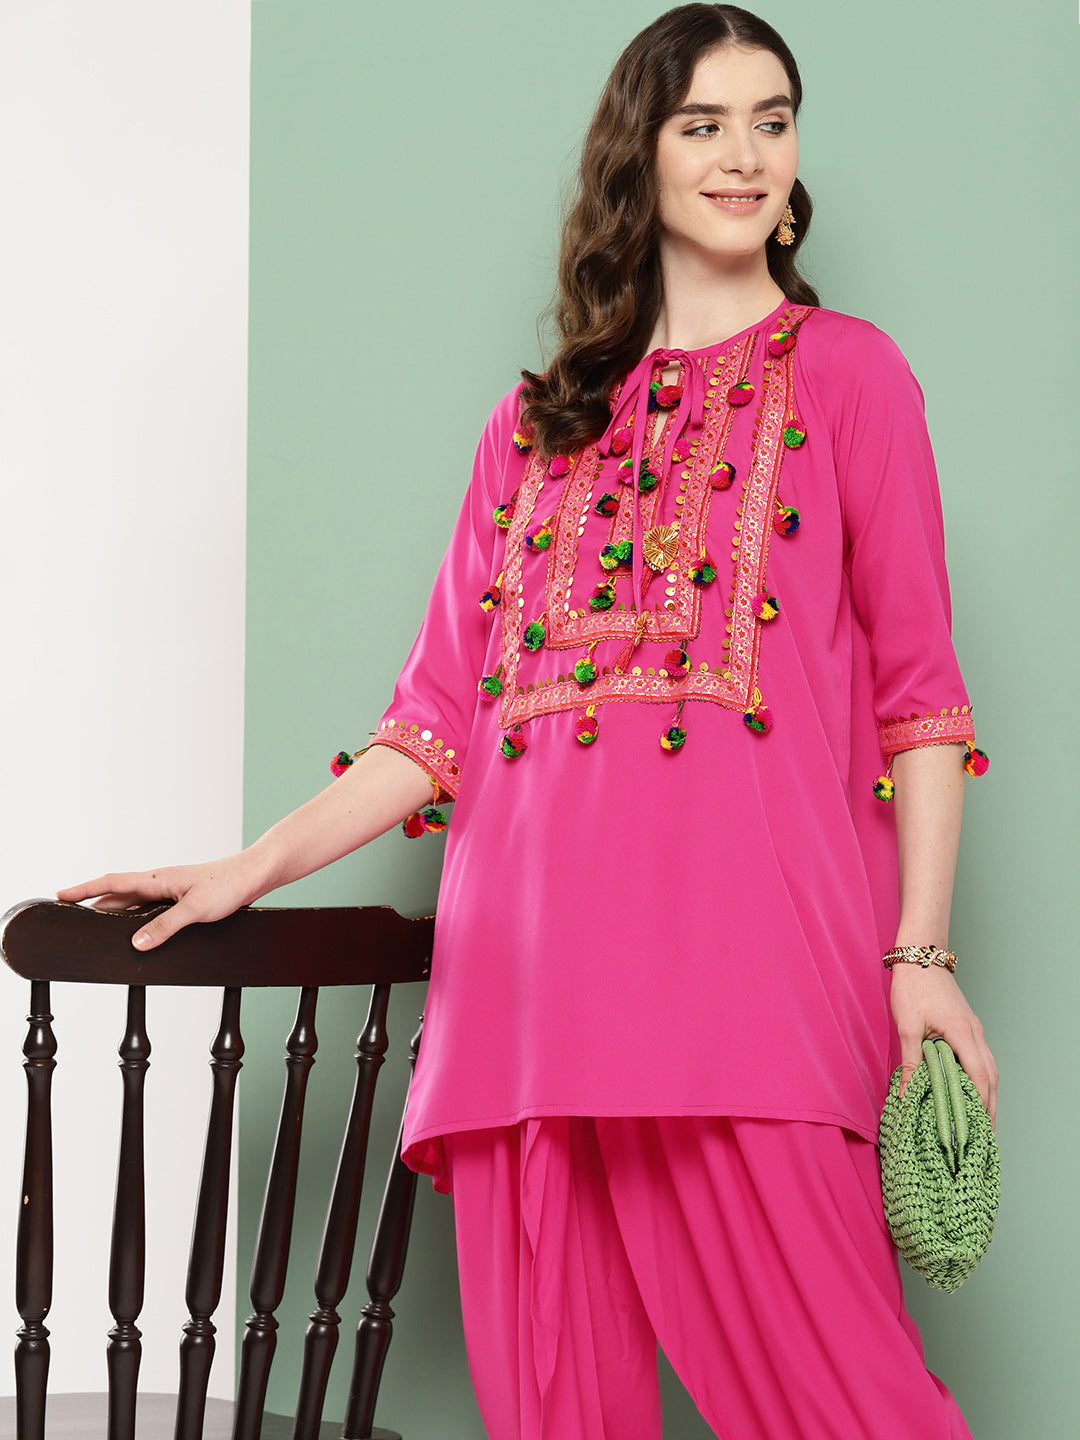 Pink Embellished Ethnic Tunic with Dhoti Pants